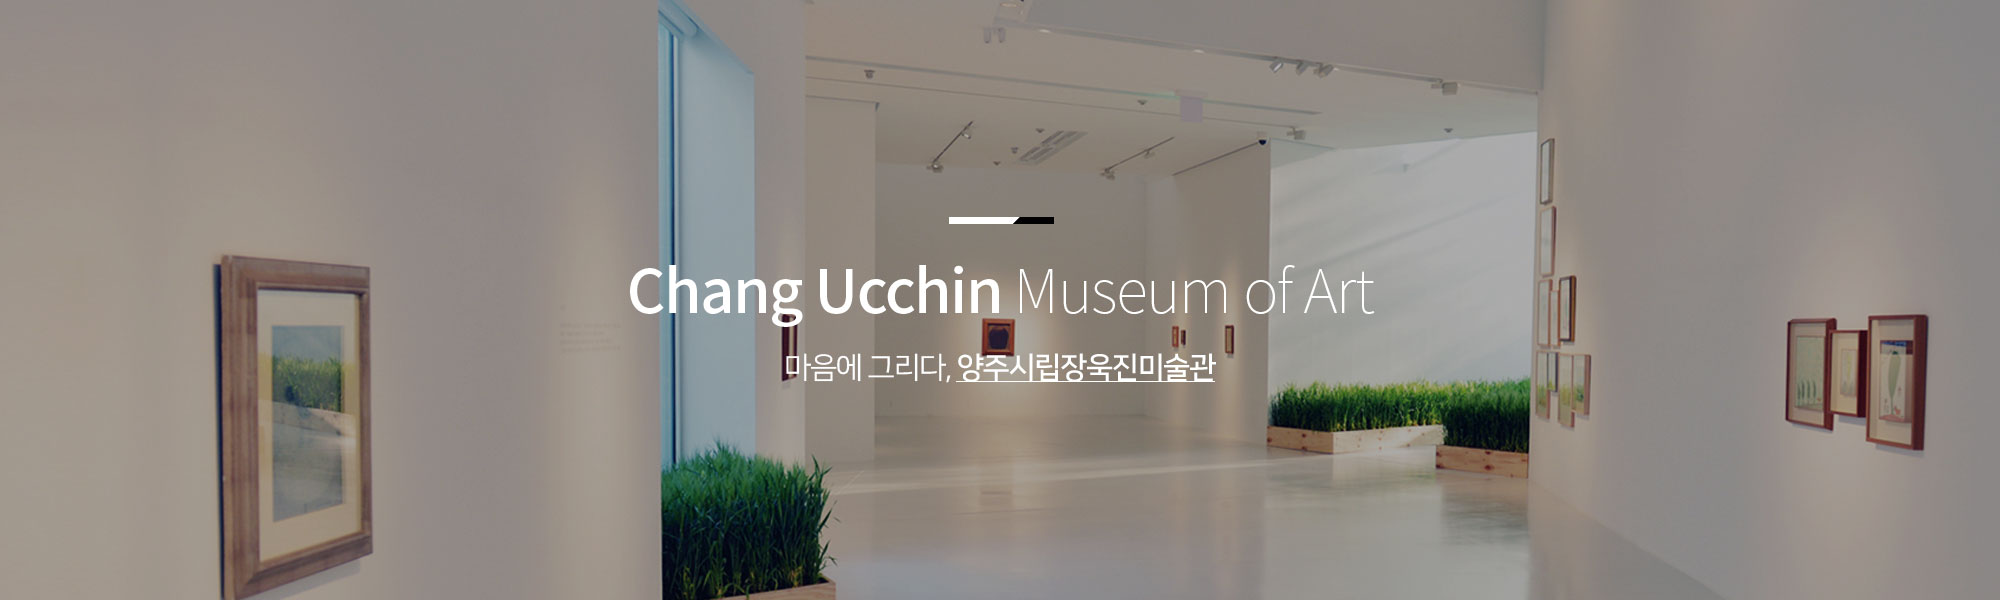 Chang Ucchin Museum of Art 마음에 그리다, 양주시립장욱진미술관